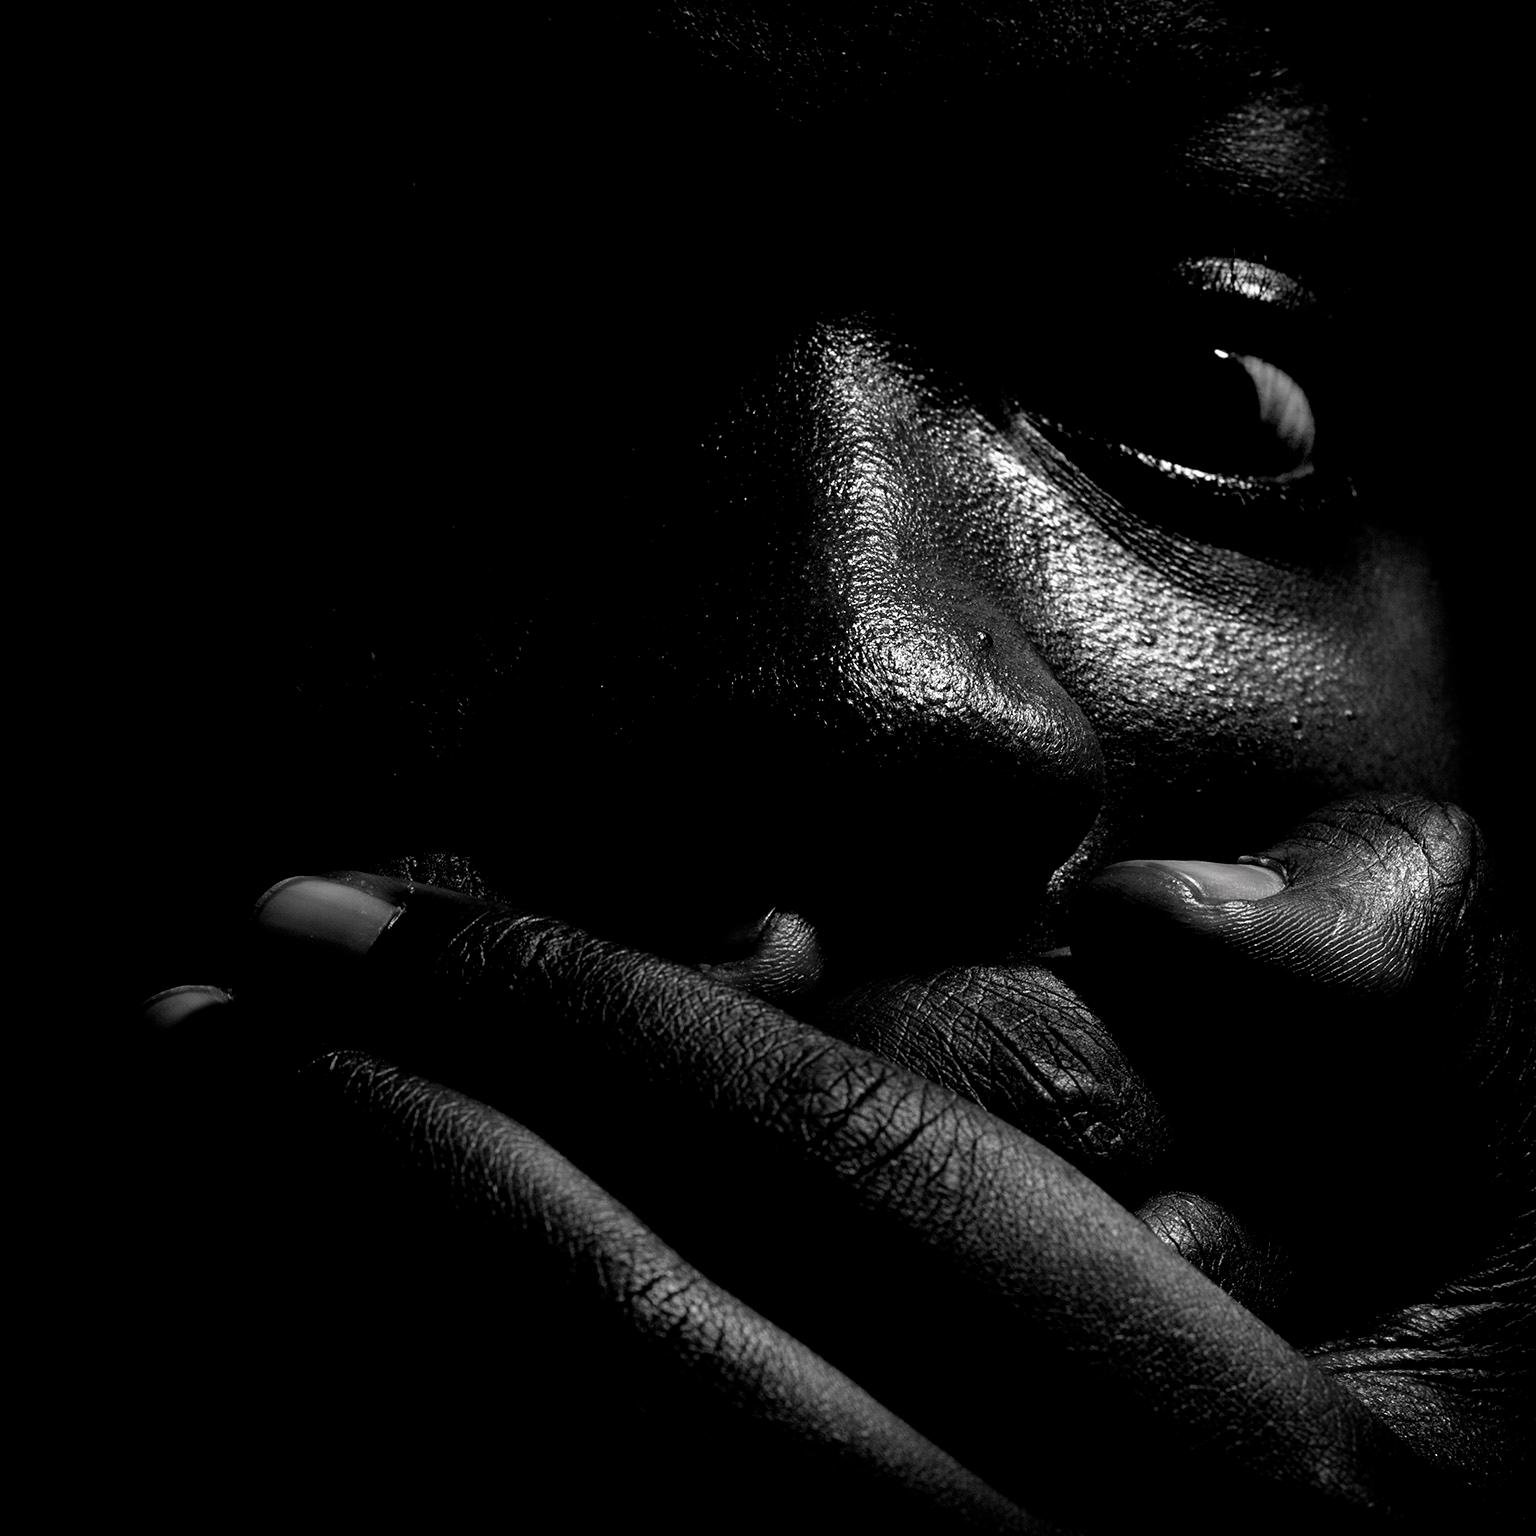 Jean-Luc Fievet Black and White Photograph – Ohne Titel # 1 - 2008 - Expressionistisches Schwarz-Weiß-Porträt eines Mannes mit vollem Gesicht